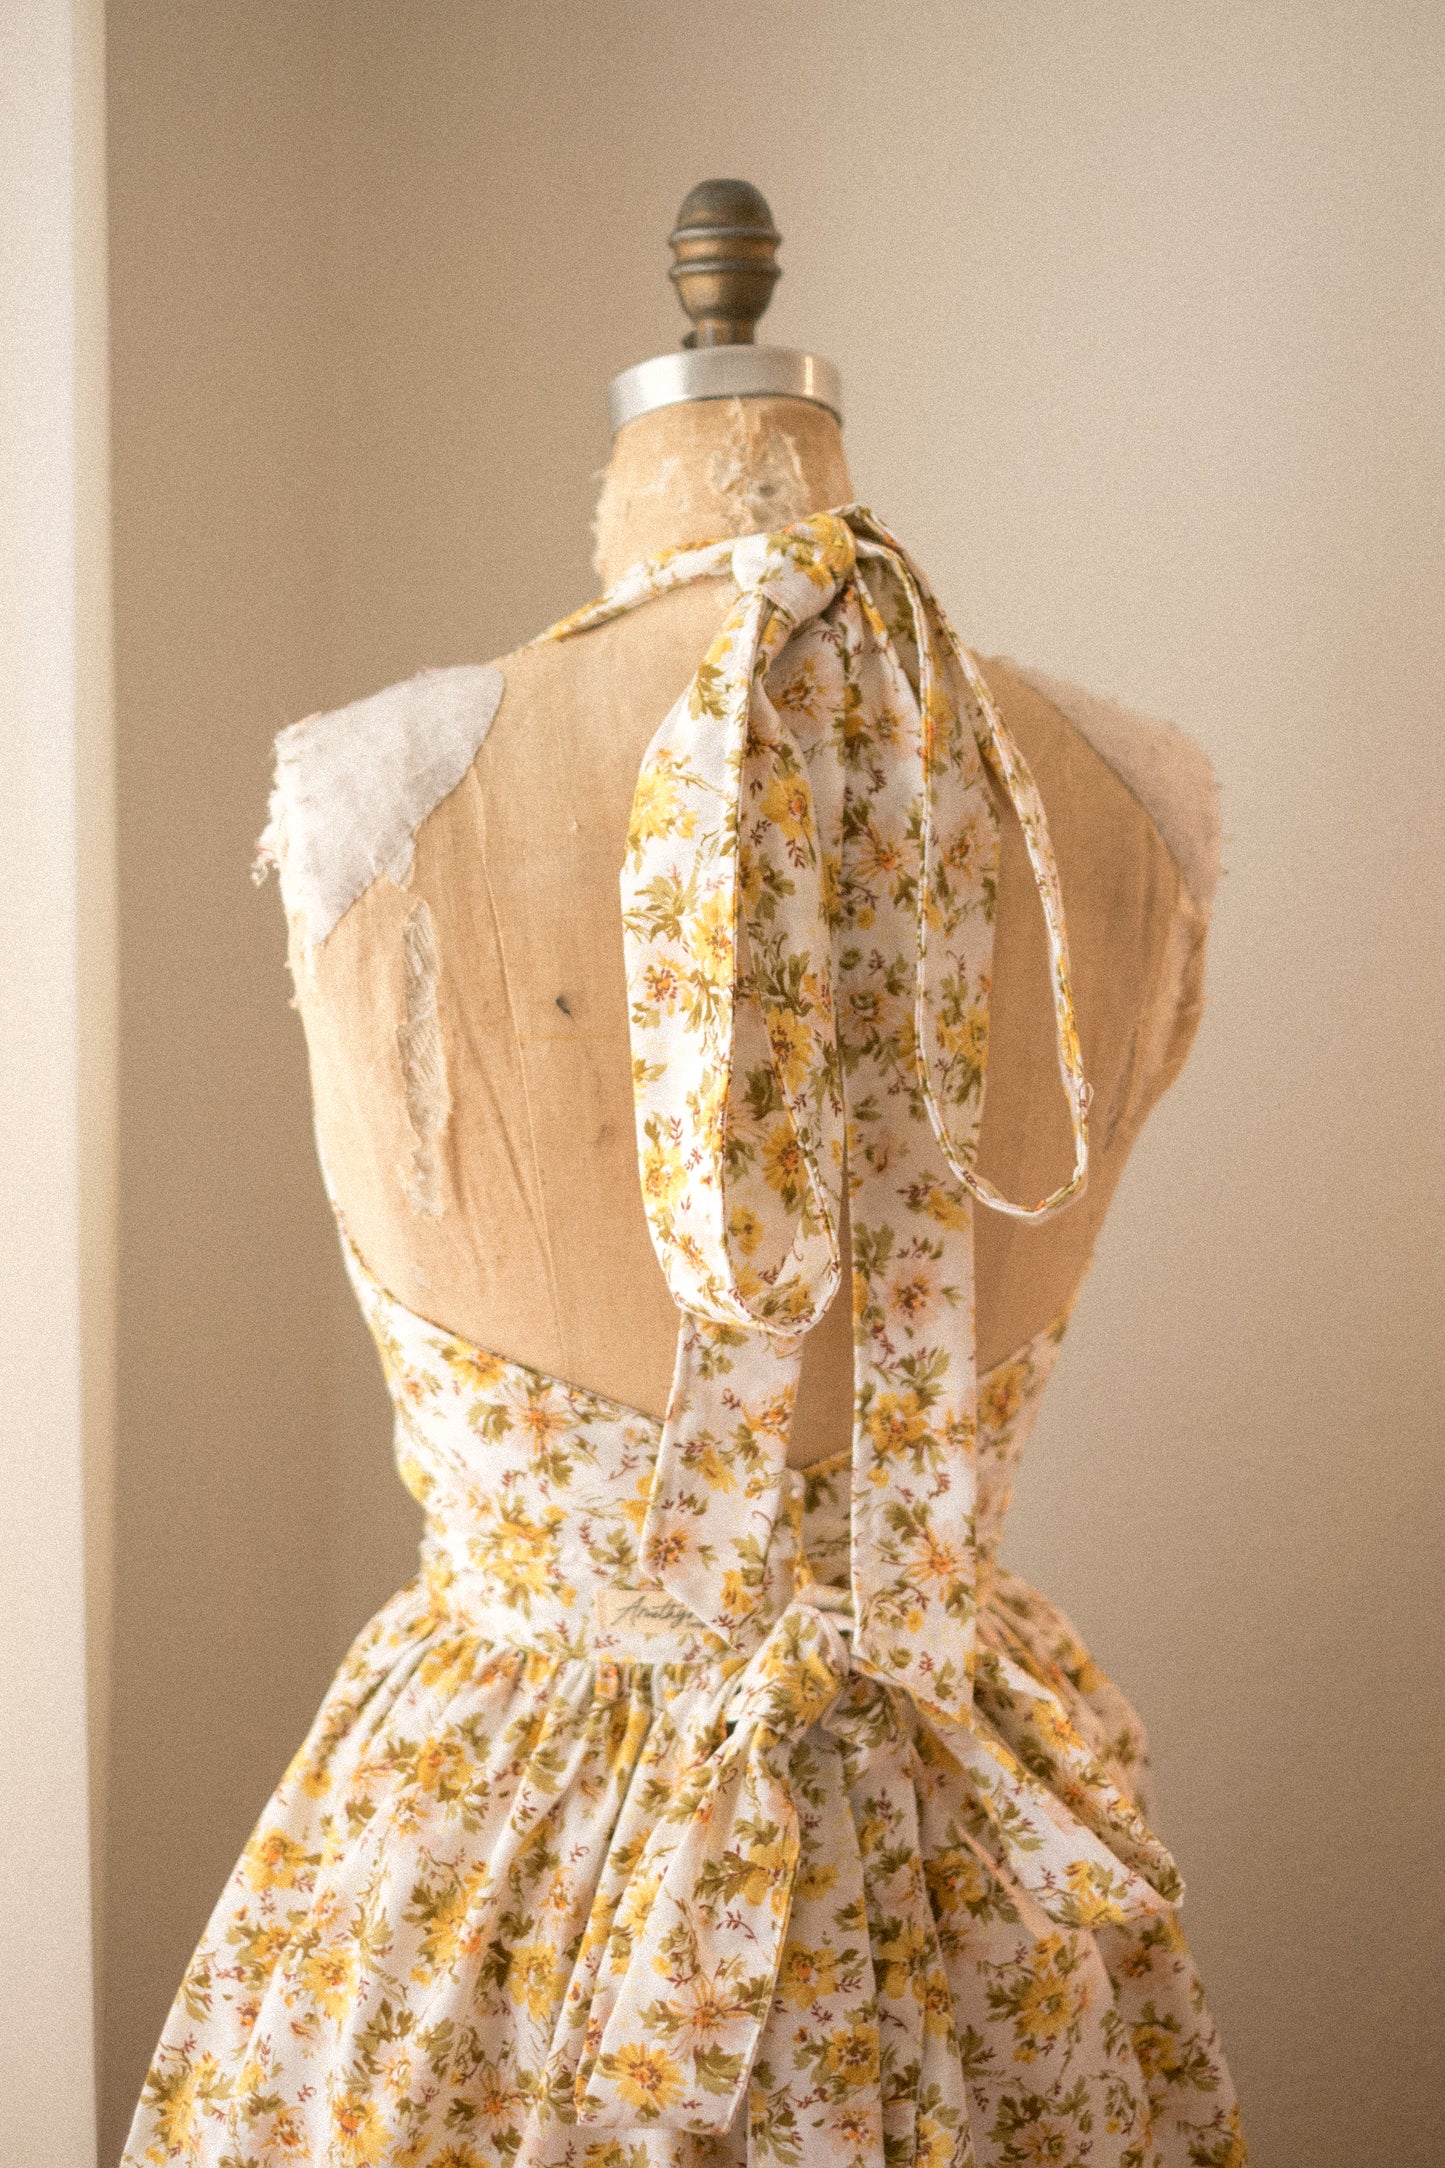 Handmade vintage floral apron set - golden